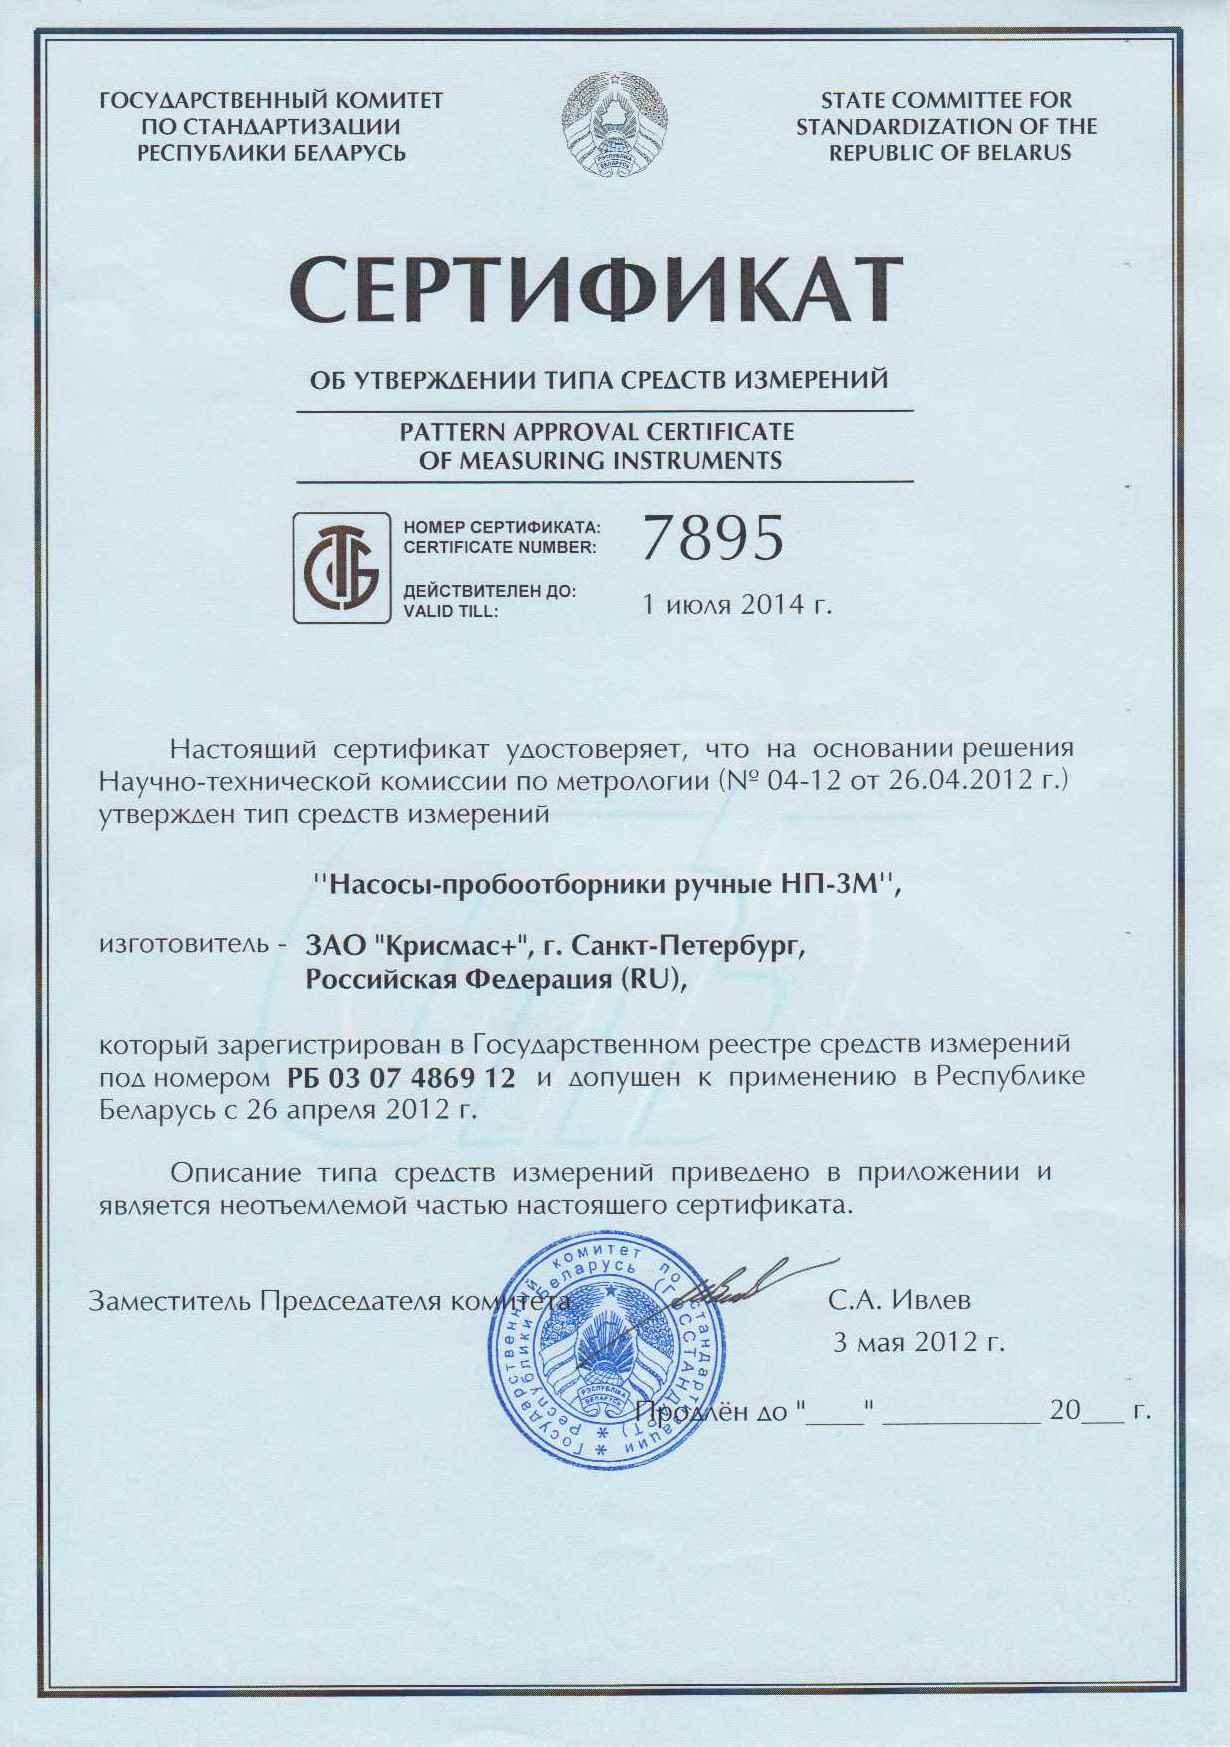 Насосы-пробоотборники, изготавливаемые ЗАО «Крисмас+», получили сертификат государственного комитета по стандартизации республики Беларусь.